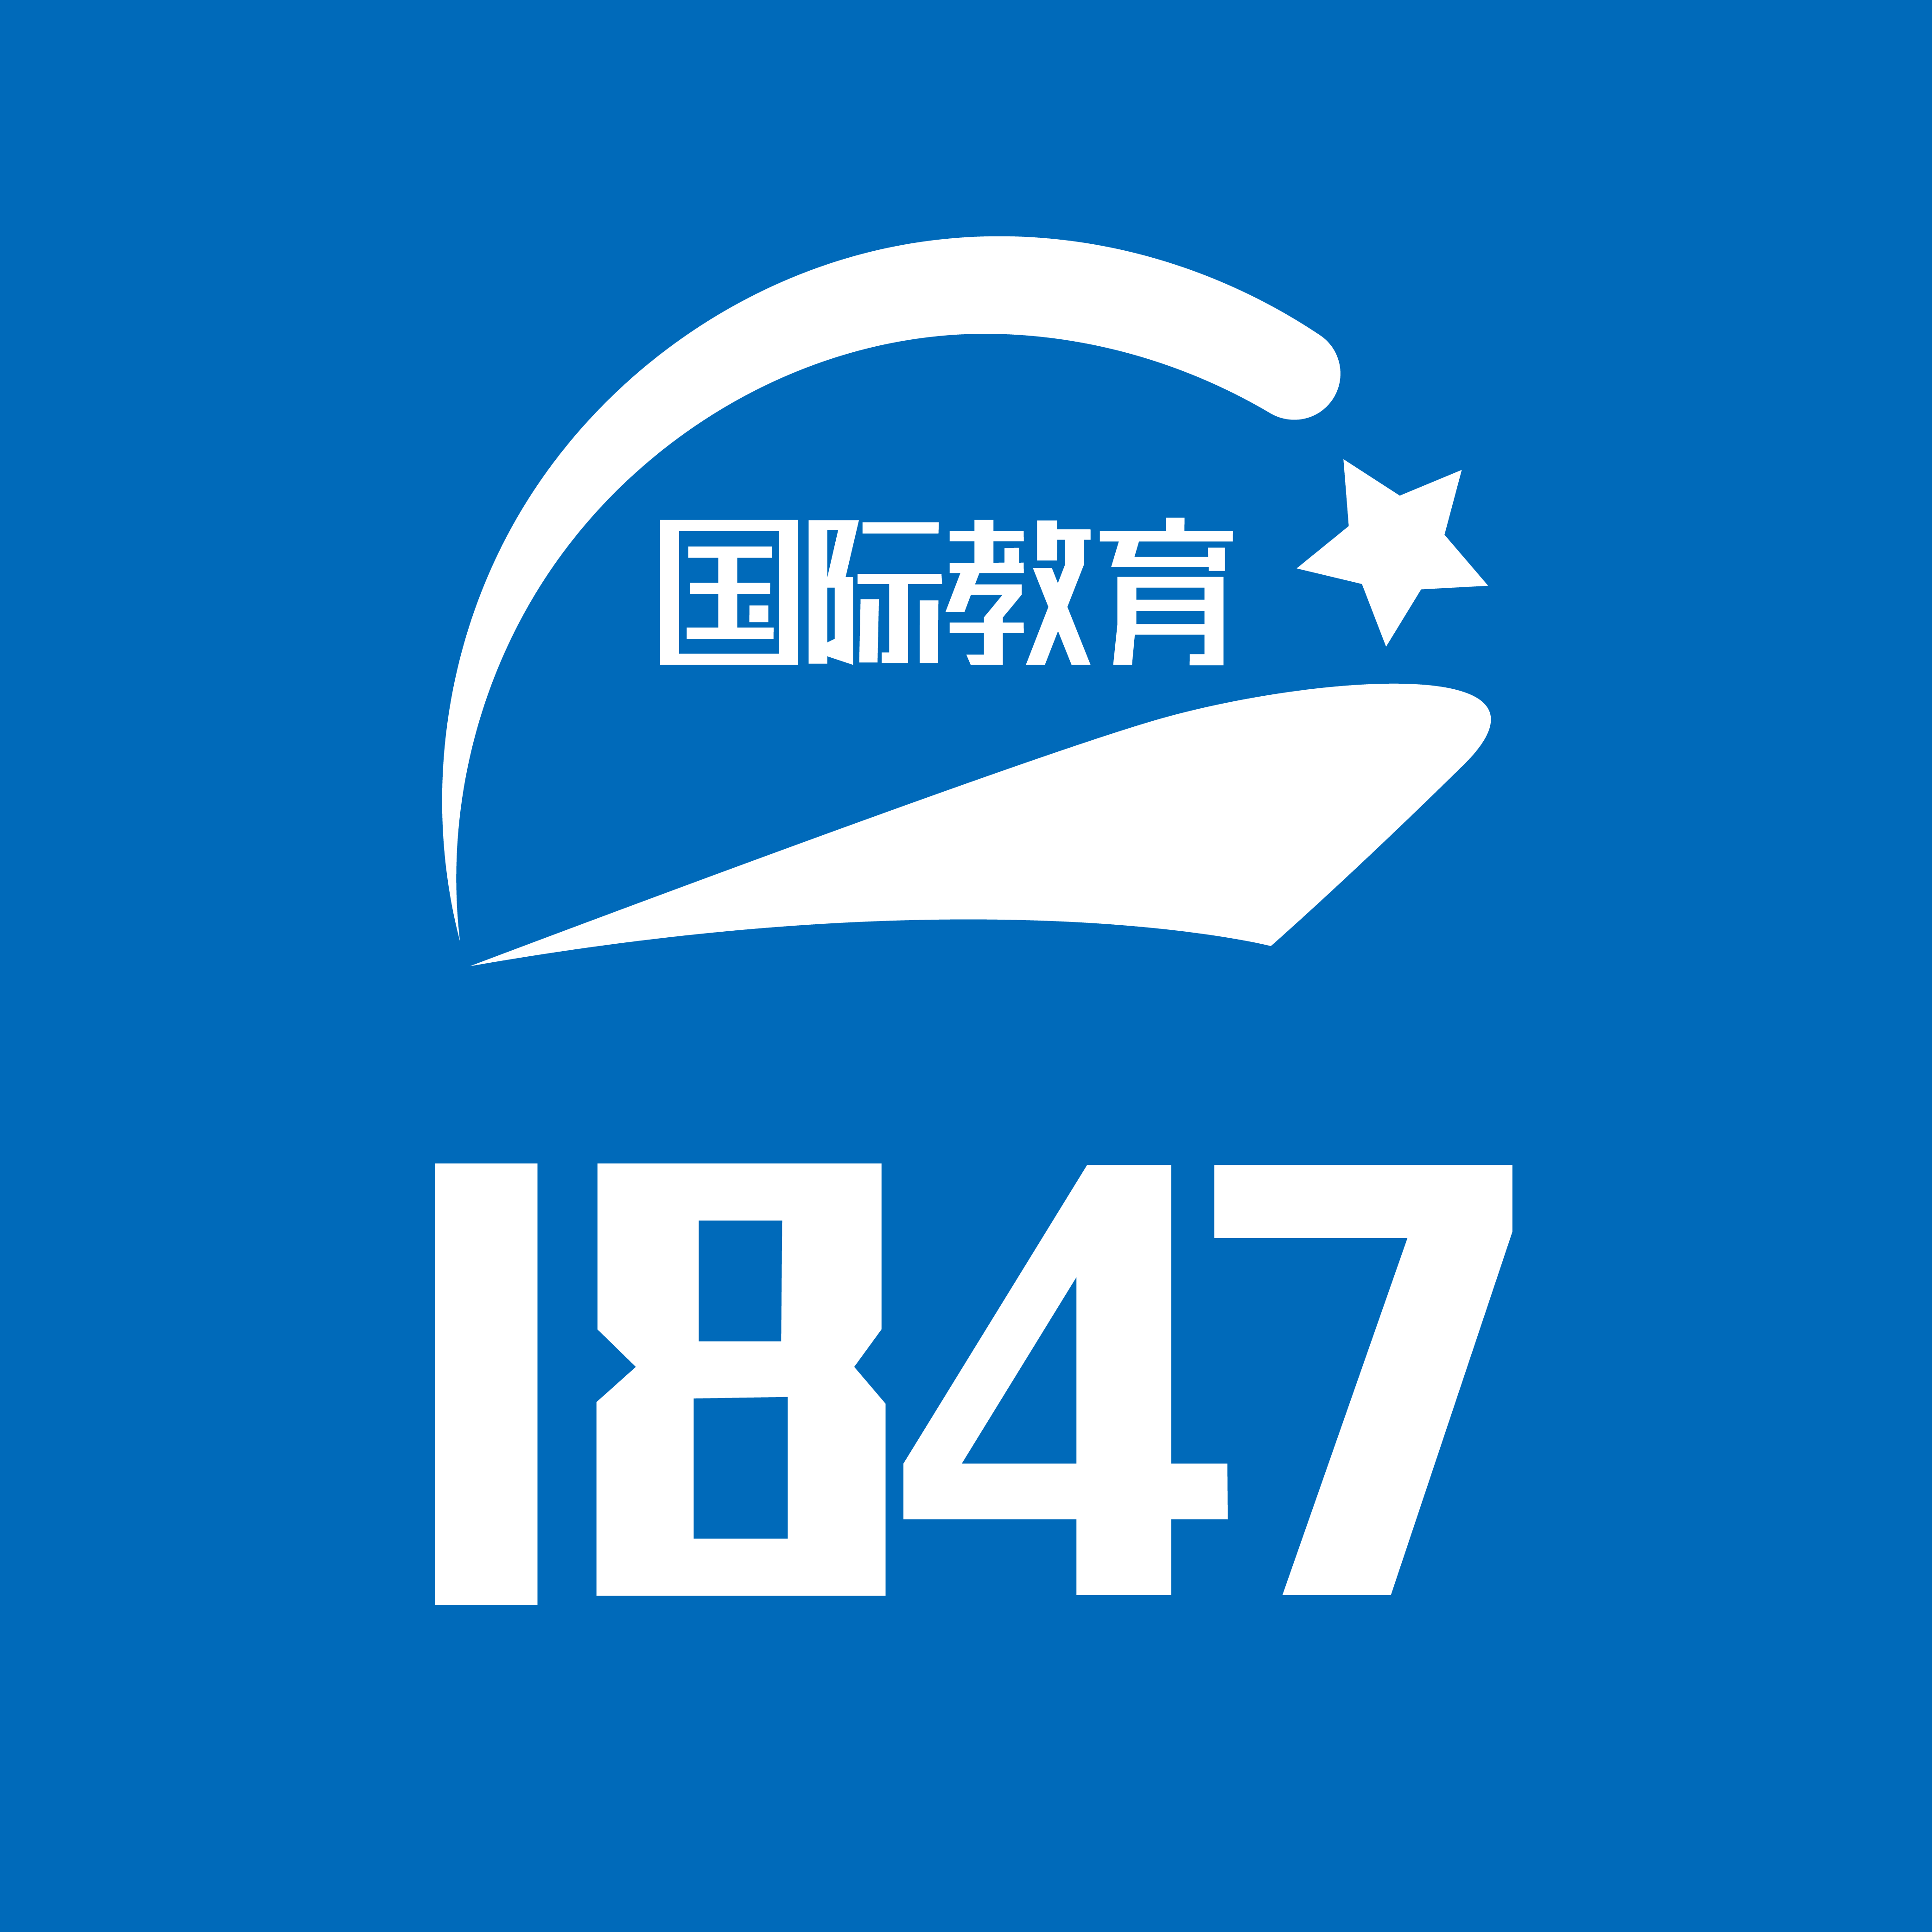 【1847国际教育】一站式服务平台